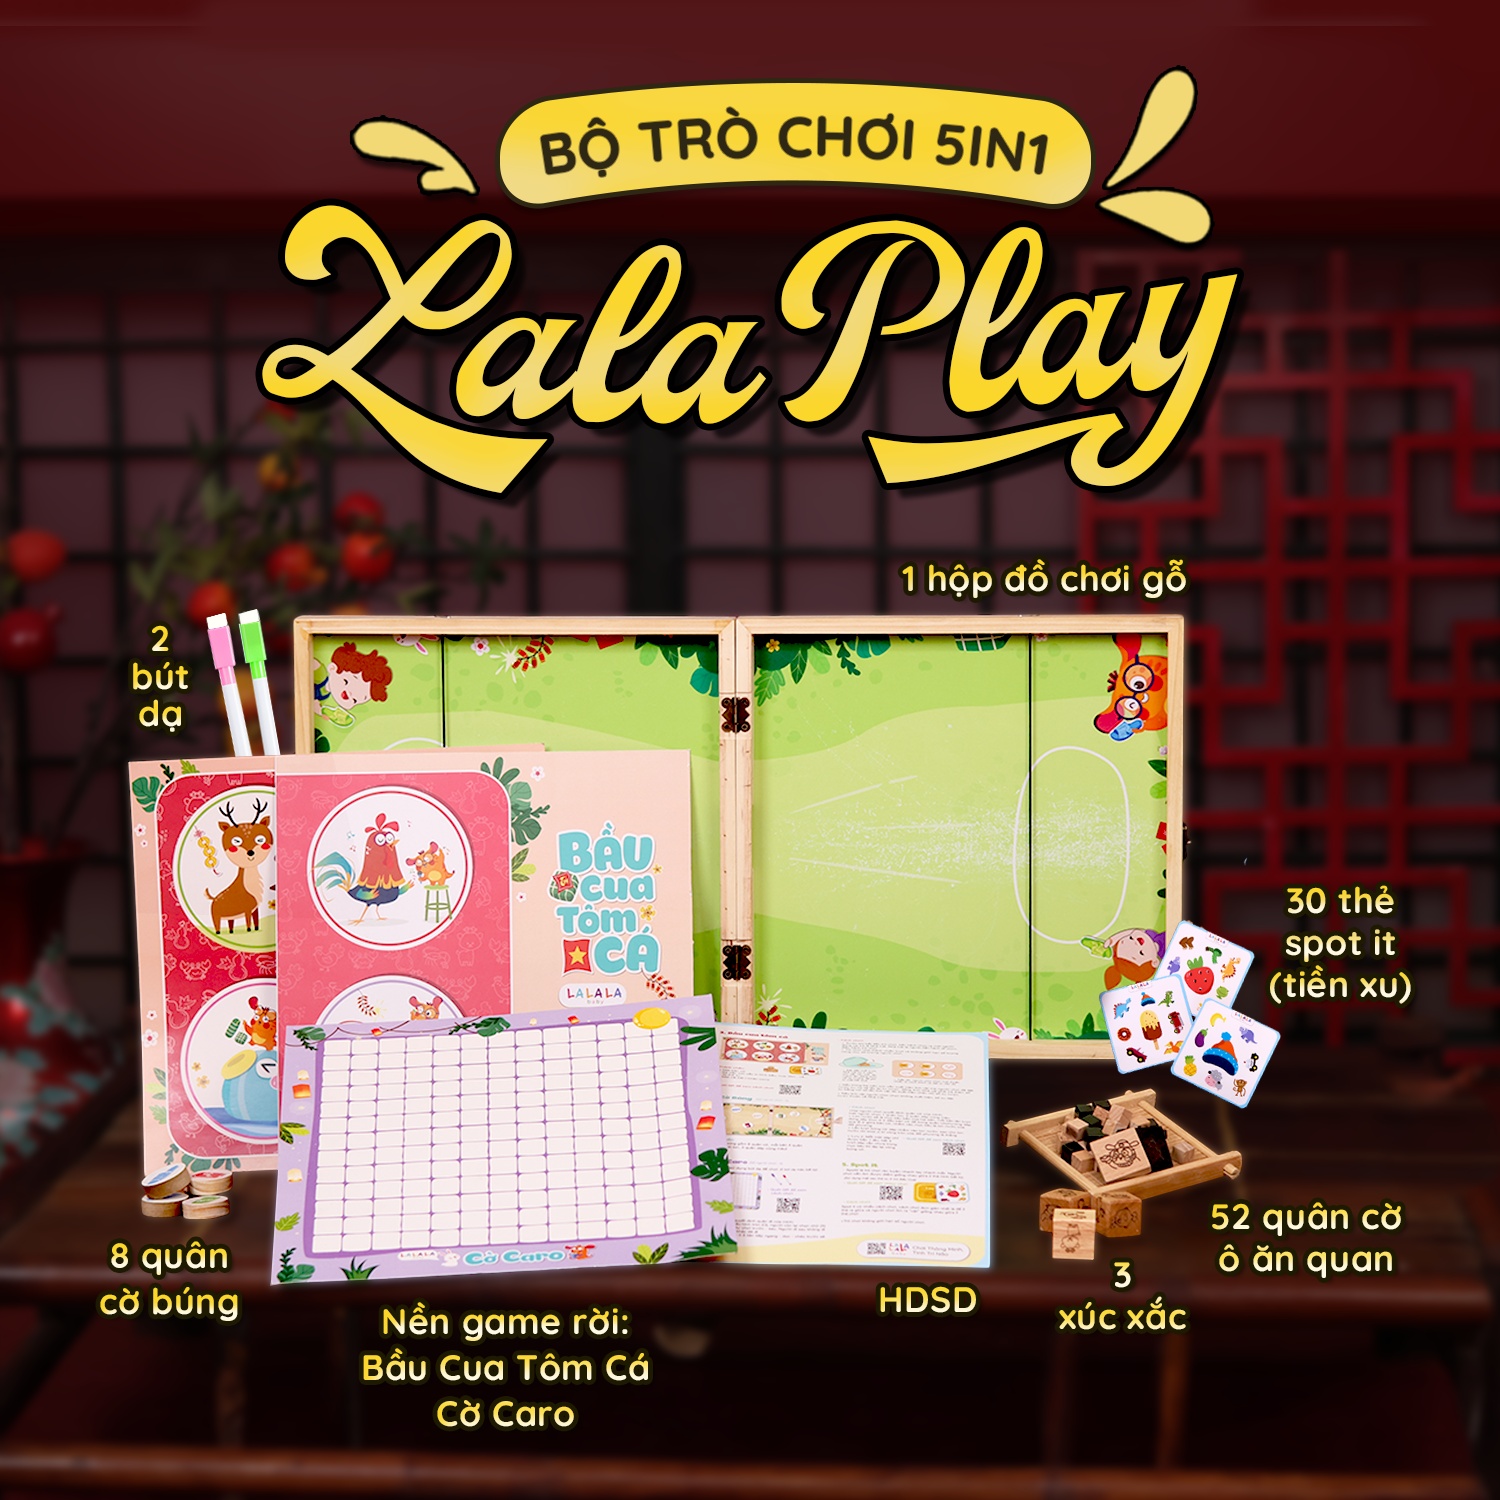 Bộ Đồ Chơi Board Game 5in1 Lalaplay - Trò Chơi Dân Gian - Lalala baby